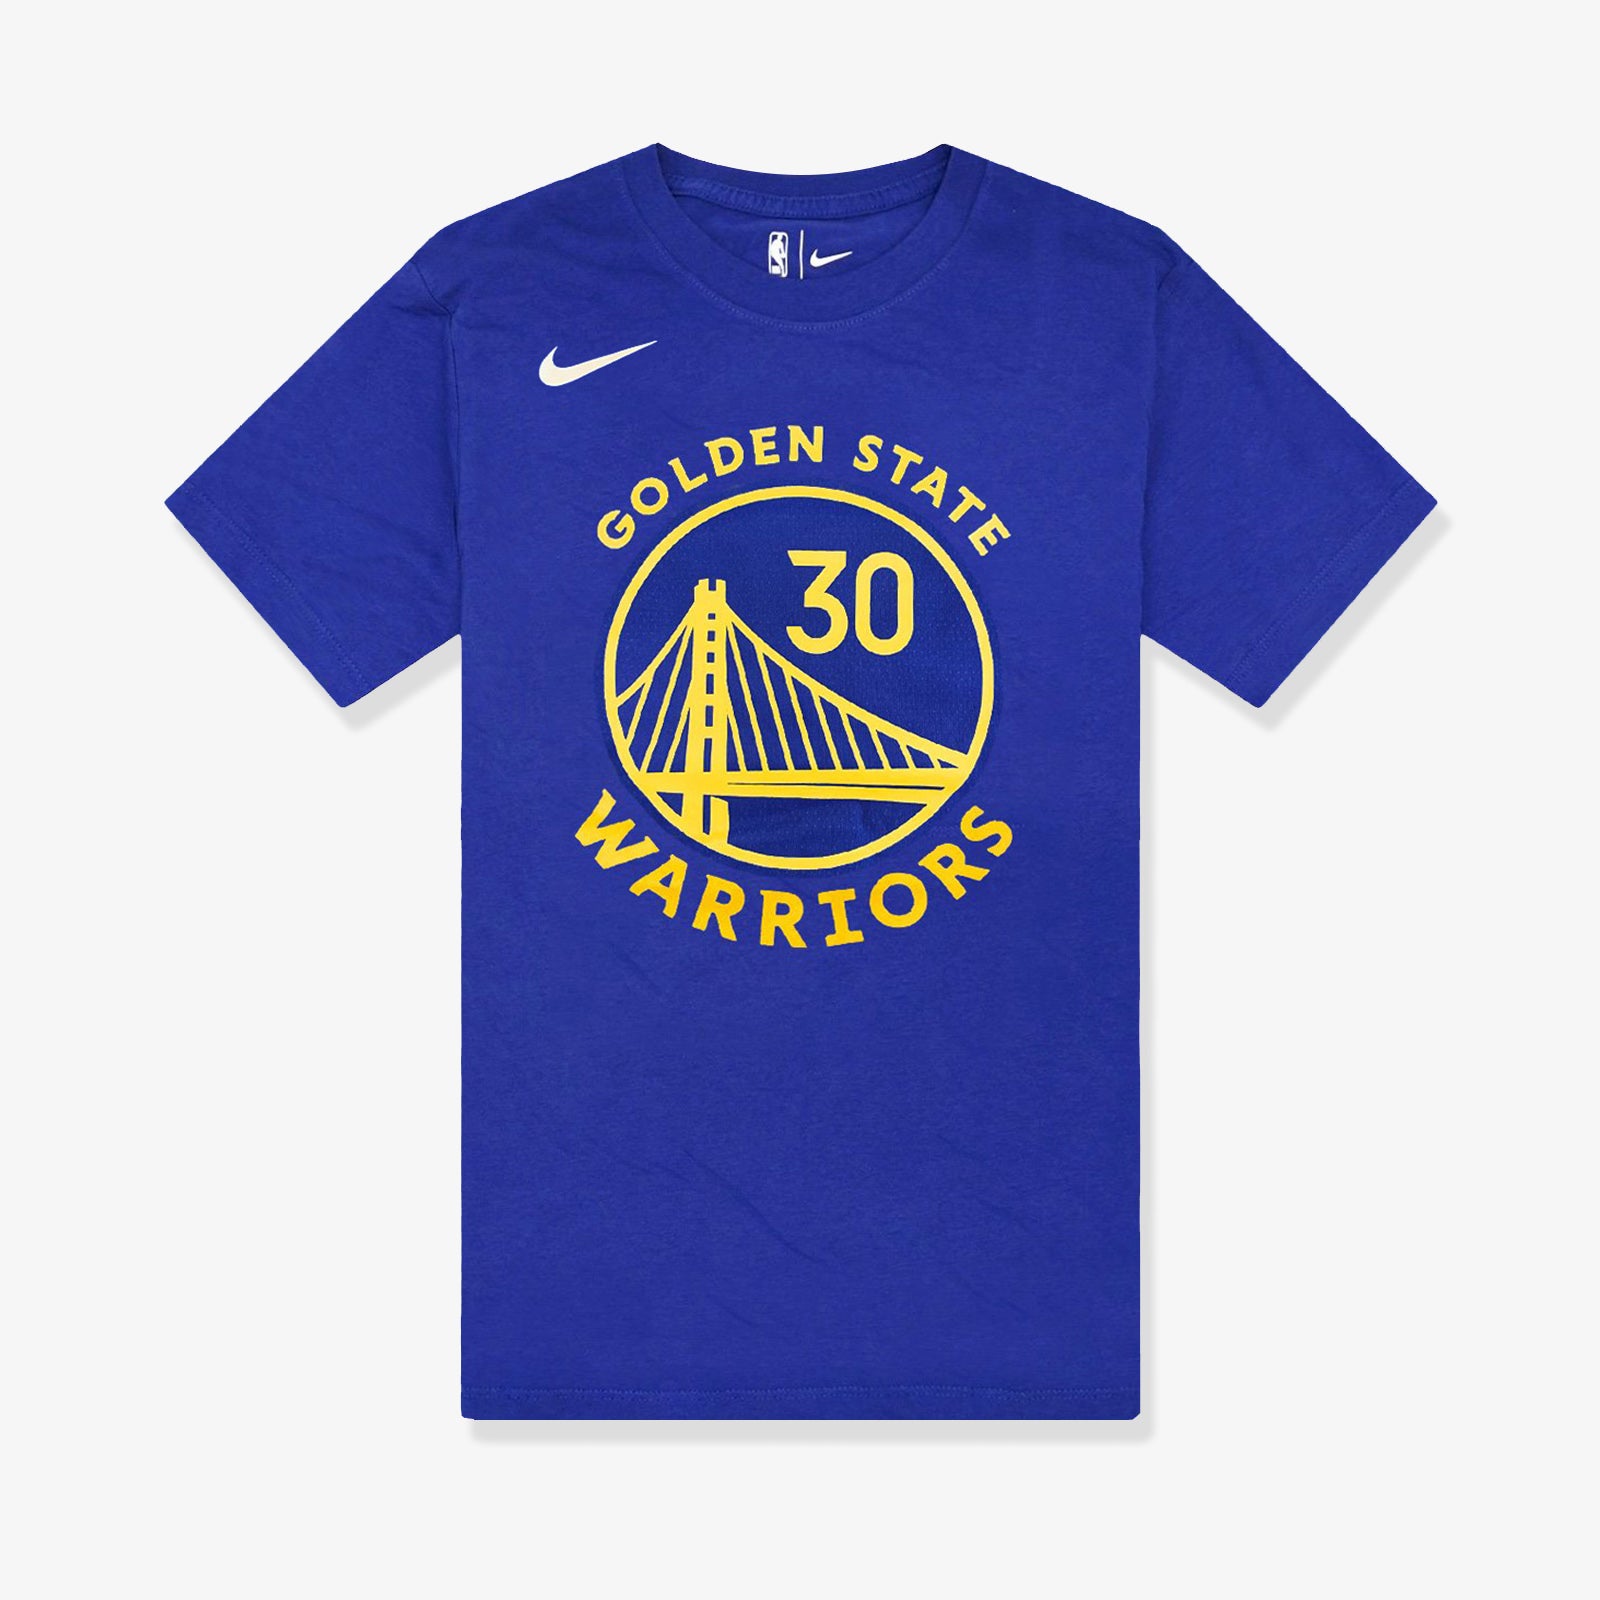 Nike Stephen Curry Golden State Warriors T-Shirt, Blue, XL